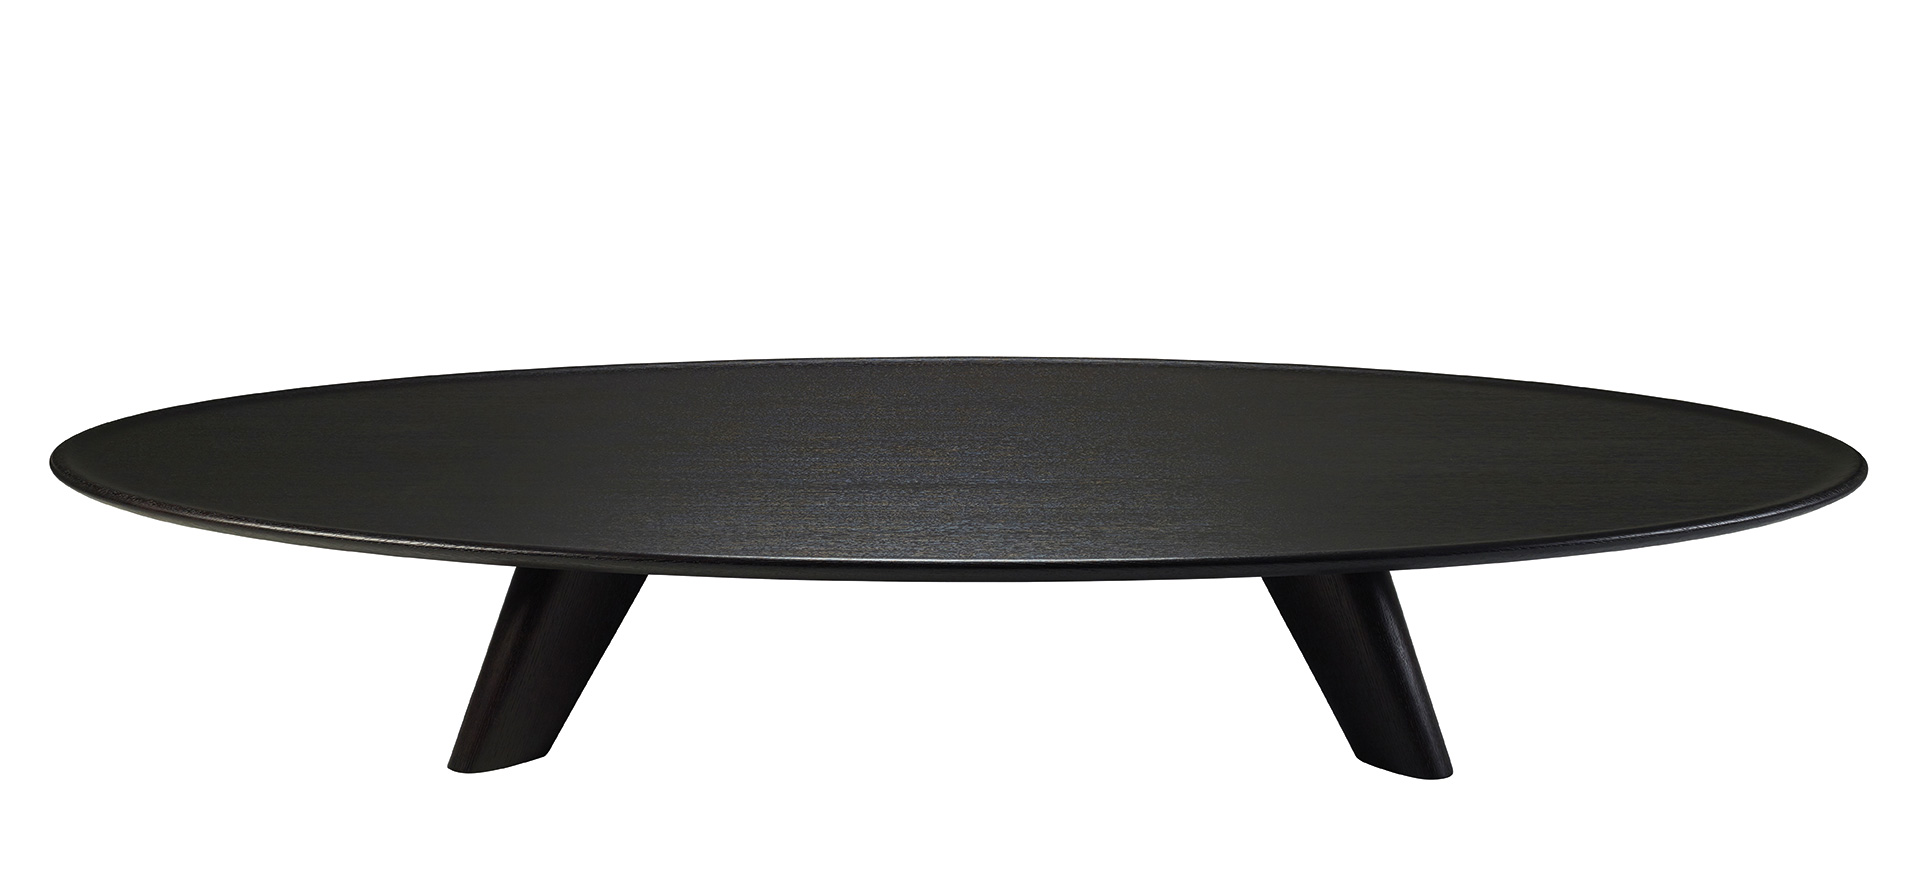 Djennè — лаконичный деревянный кофейный столик со скругленными и резными профильными элементами из коллекции Indigo Tales компании Promemoria